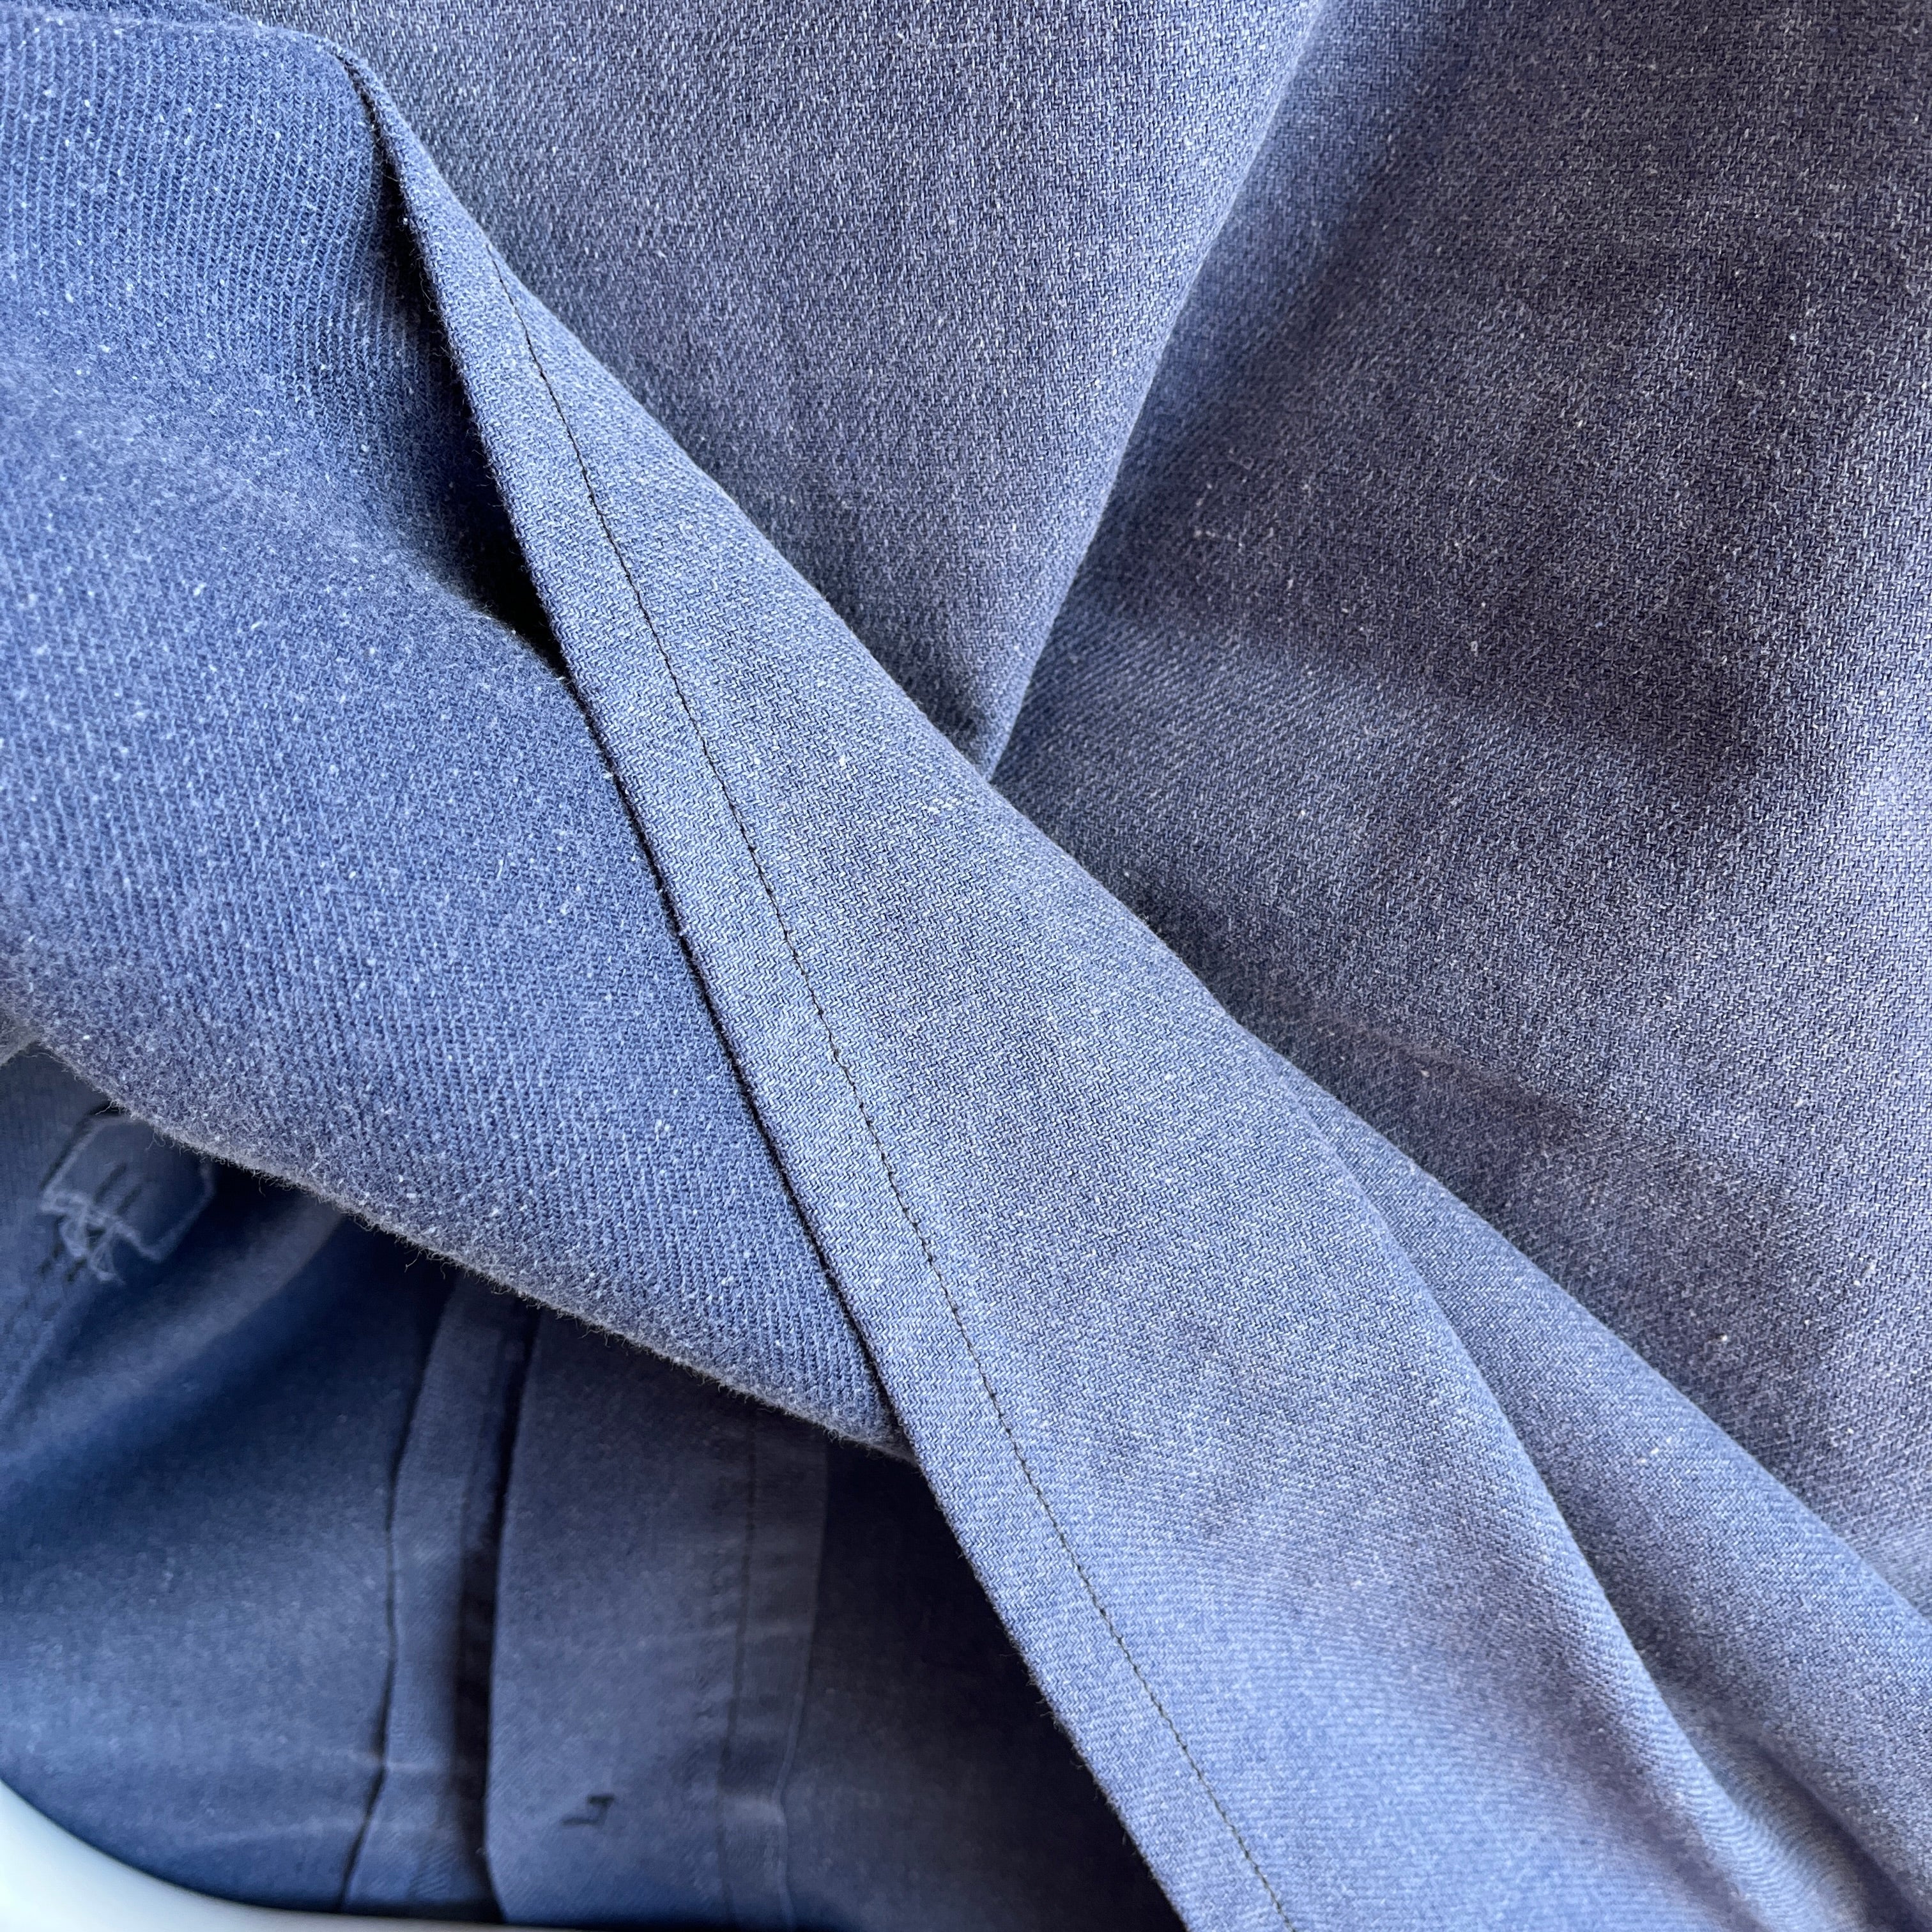 Manteau de corvée bleu poussiéreux des années 1970 avec raccommodage